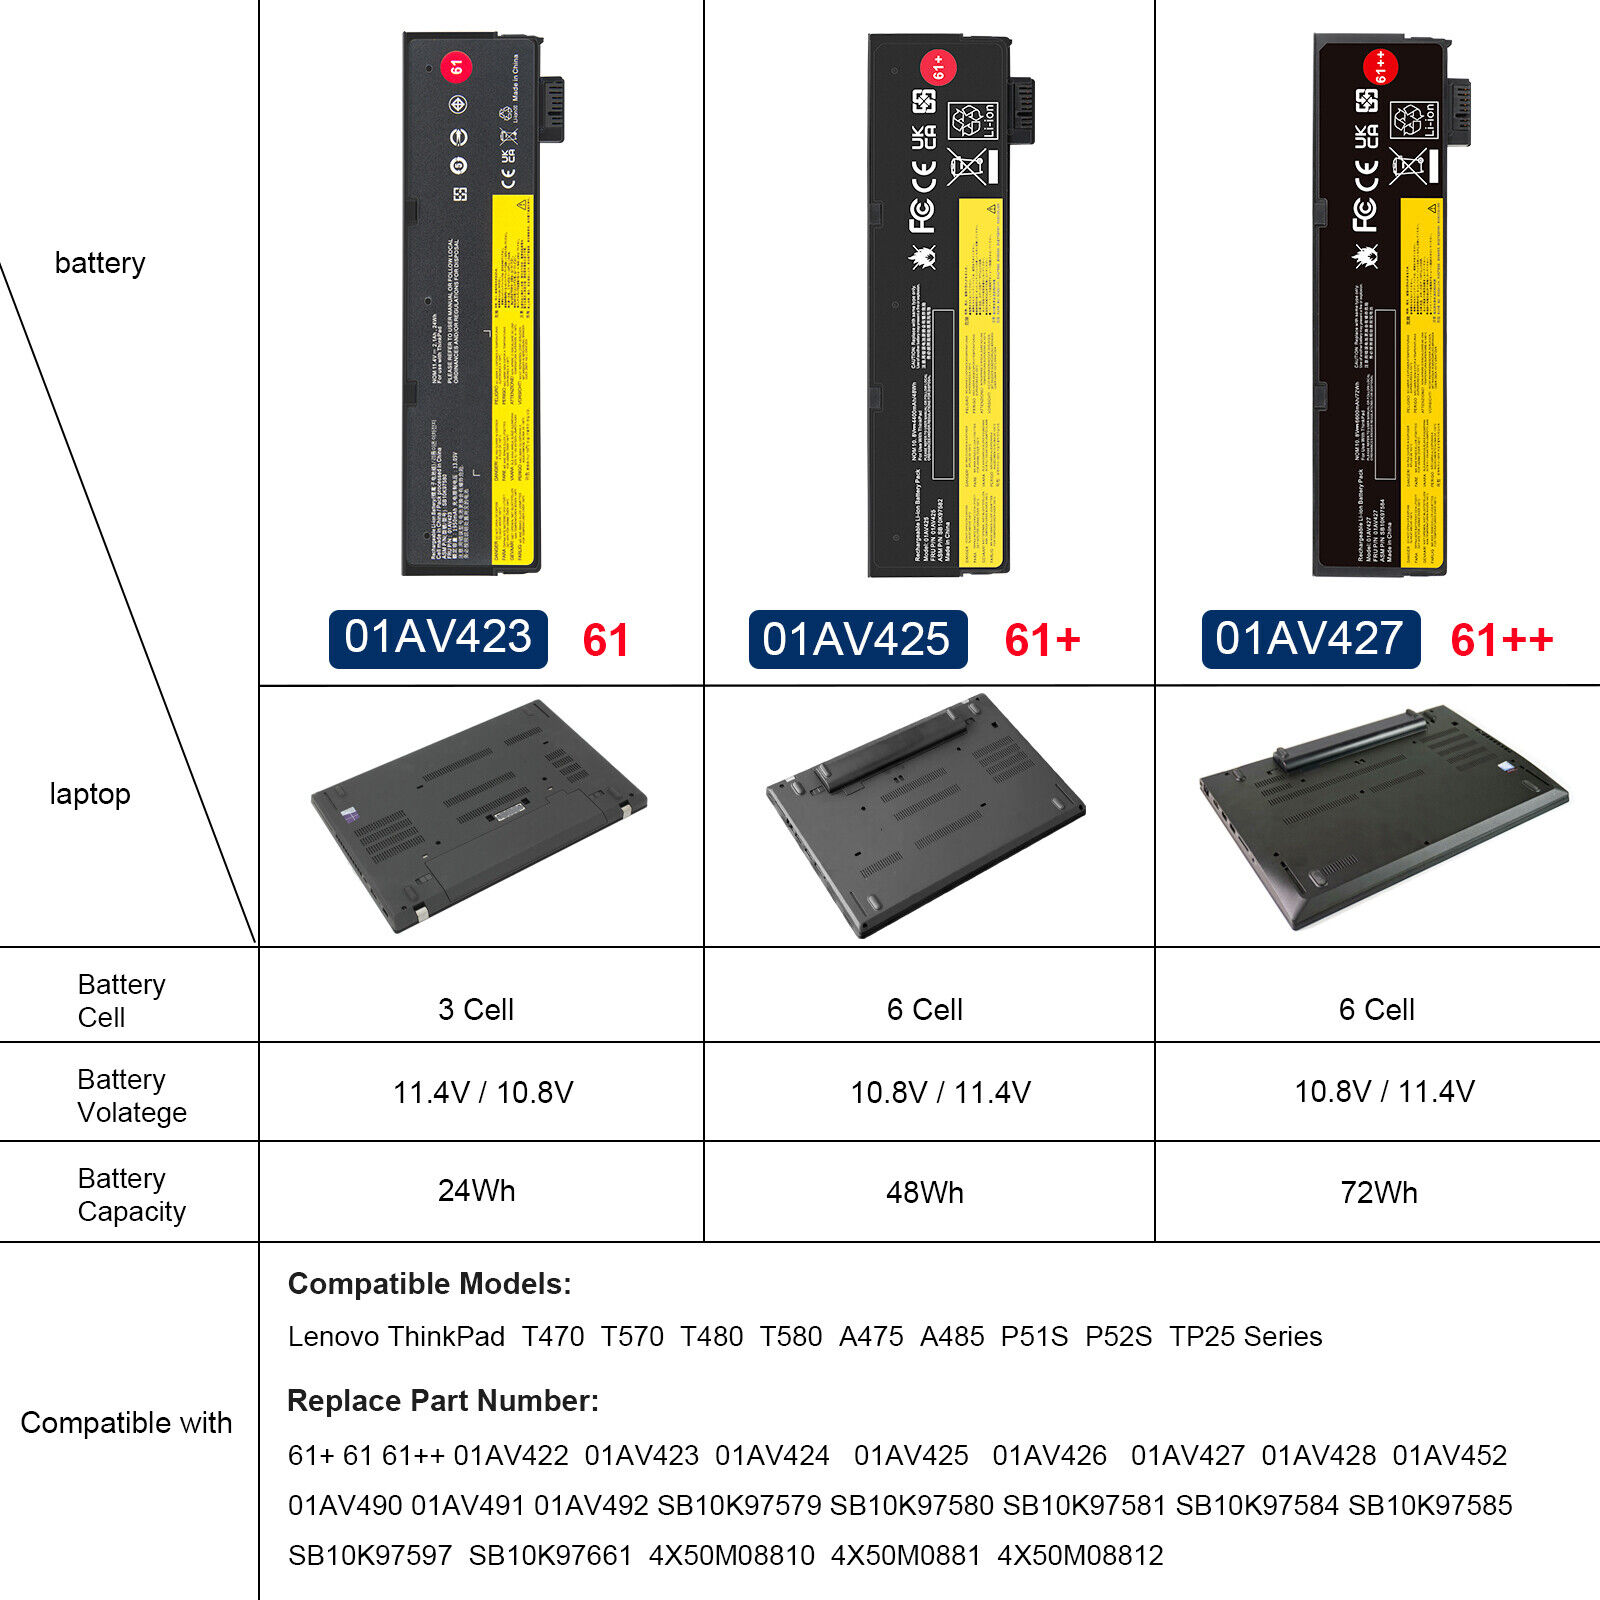 61++ Battery for Lenovo ThinkPad T470 T480 T570 T580 01AV423 01AV424 01AV422